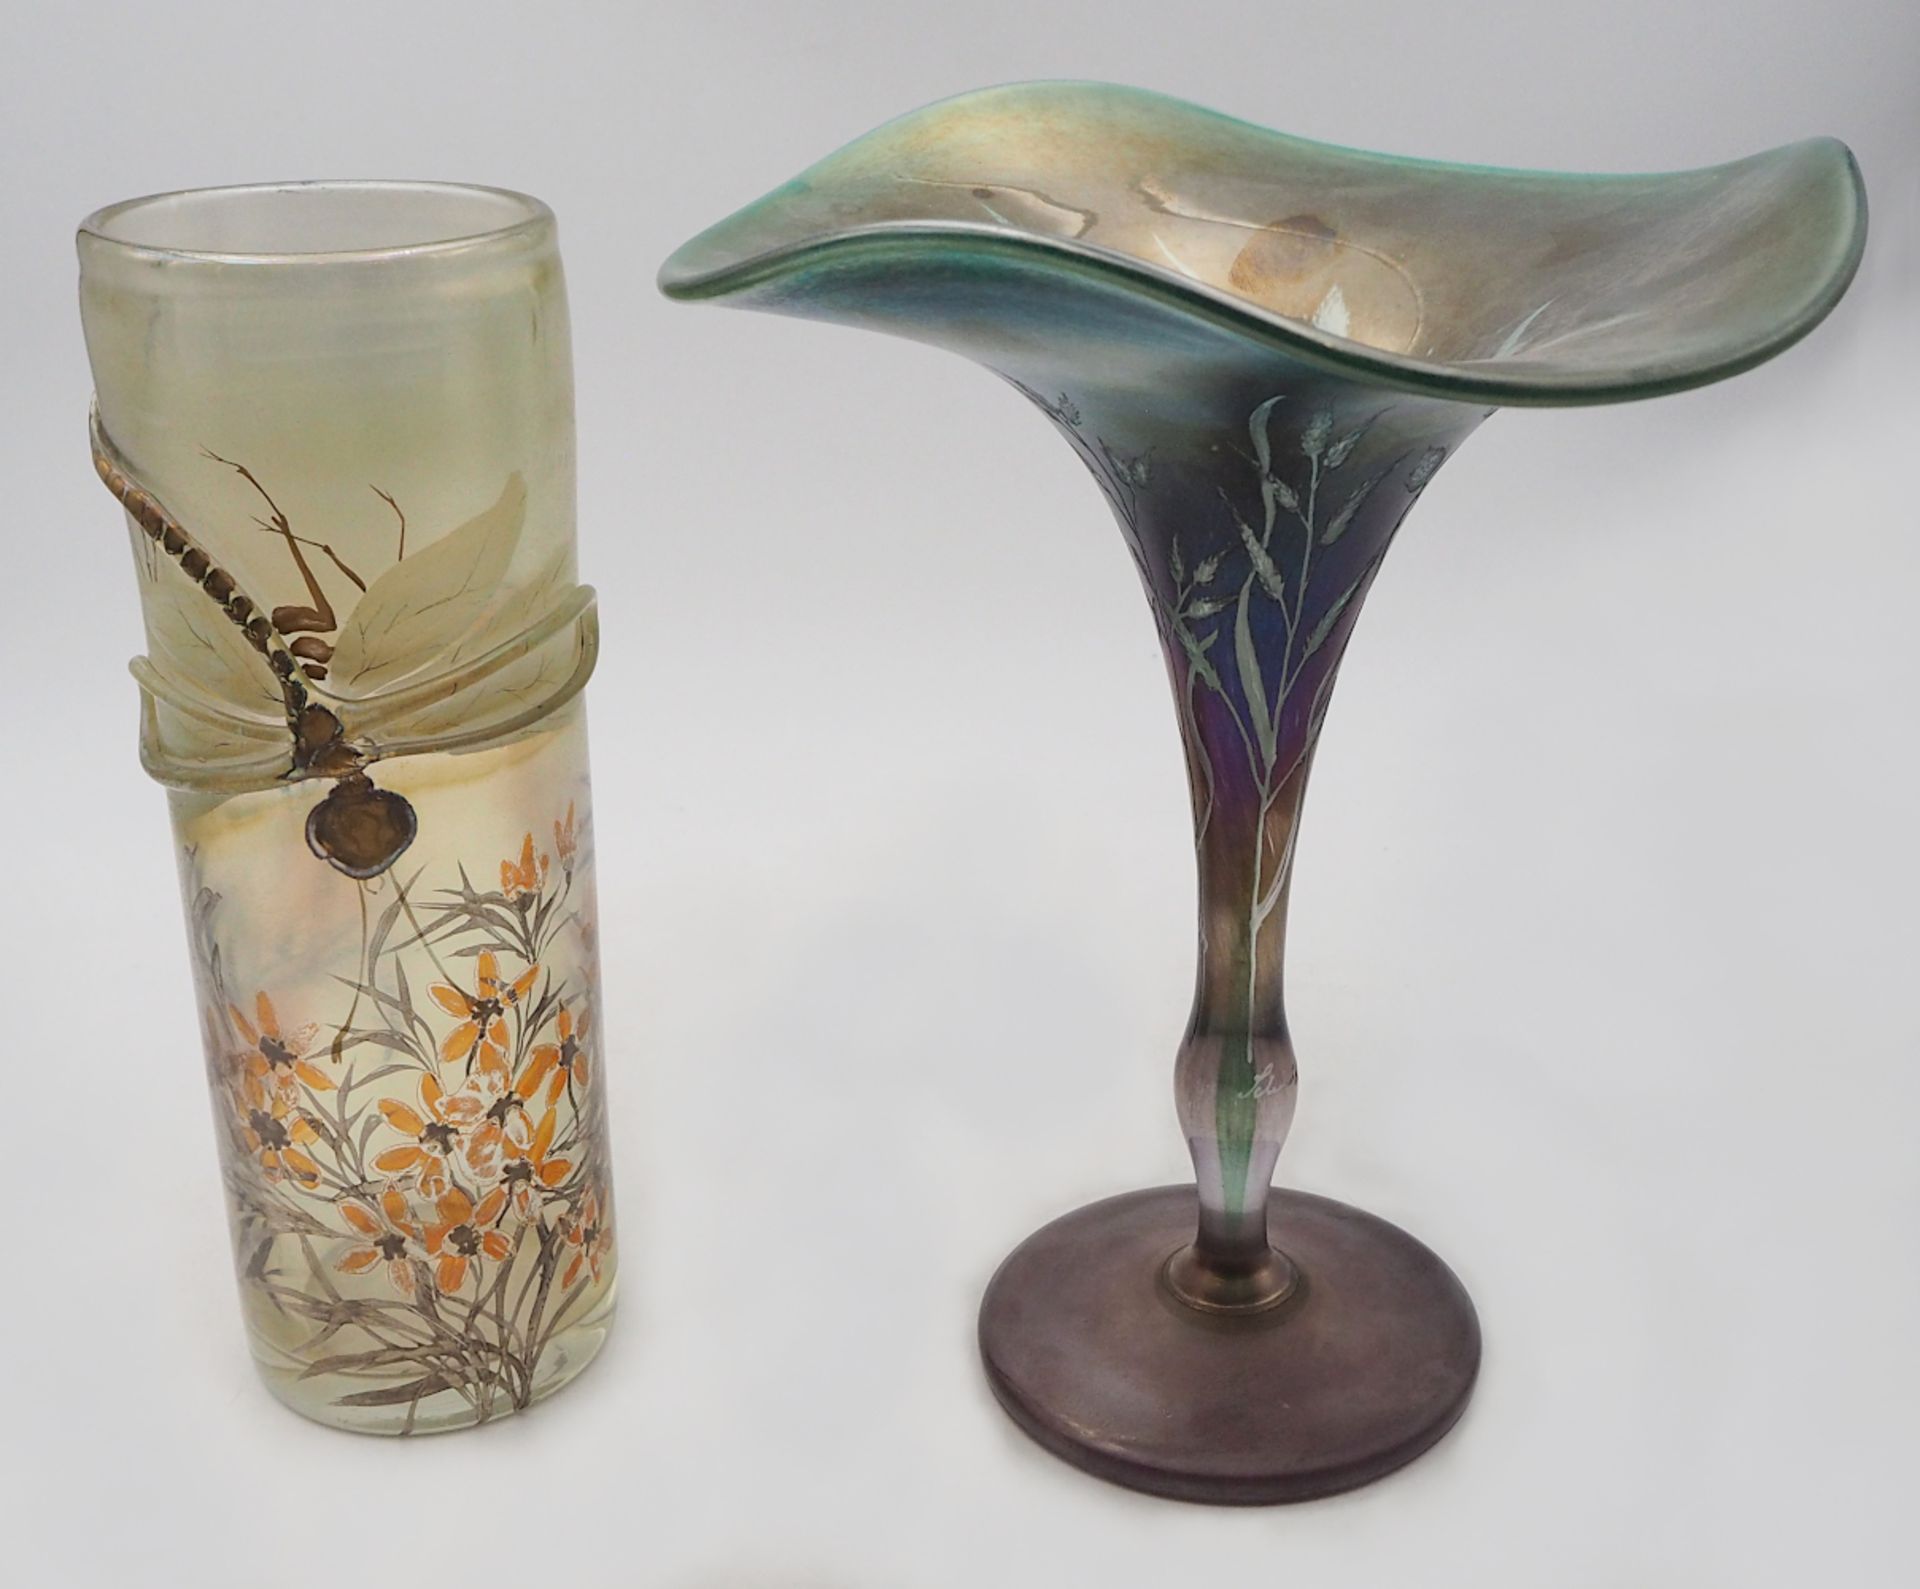 1 Vase signiert Erwin EISCH, Bayerischer Wald Zylinderform, farbloses Glas leicht iris